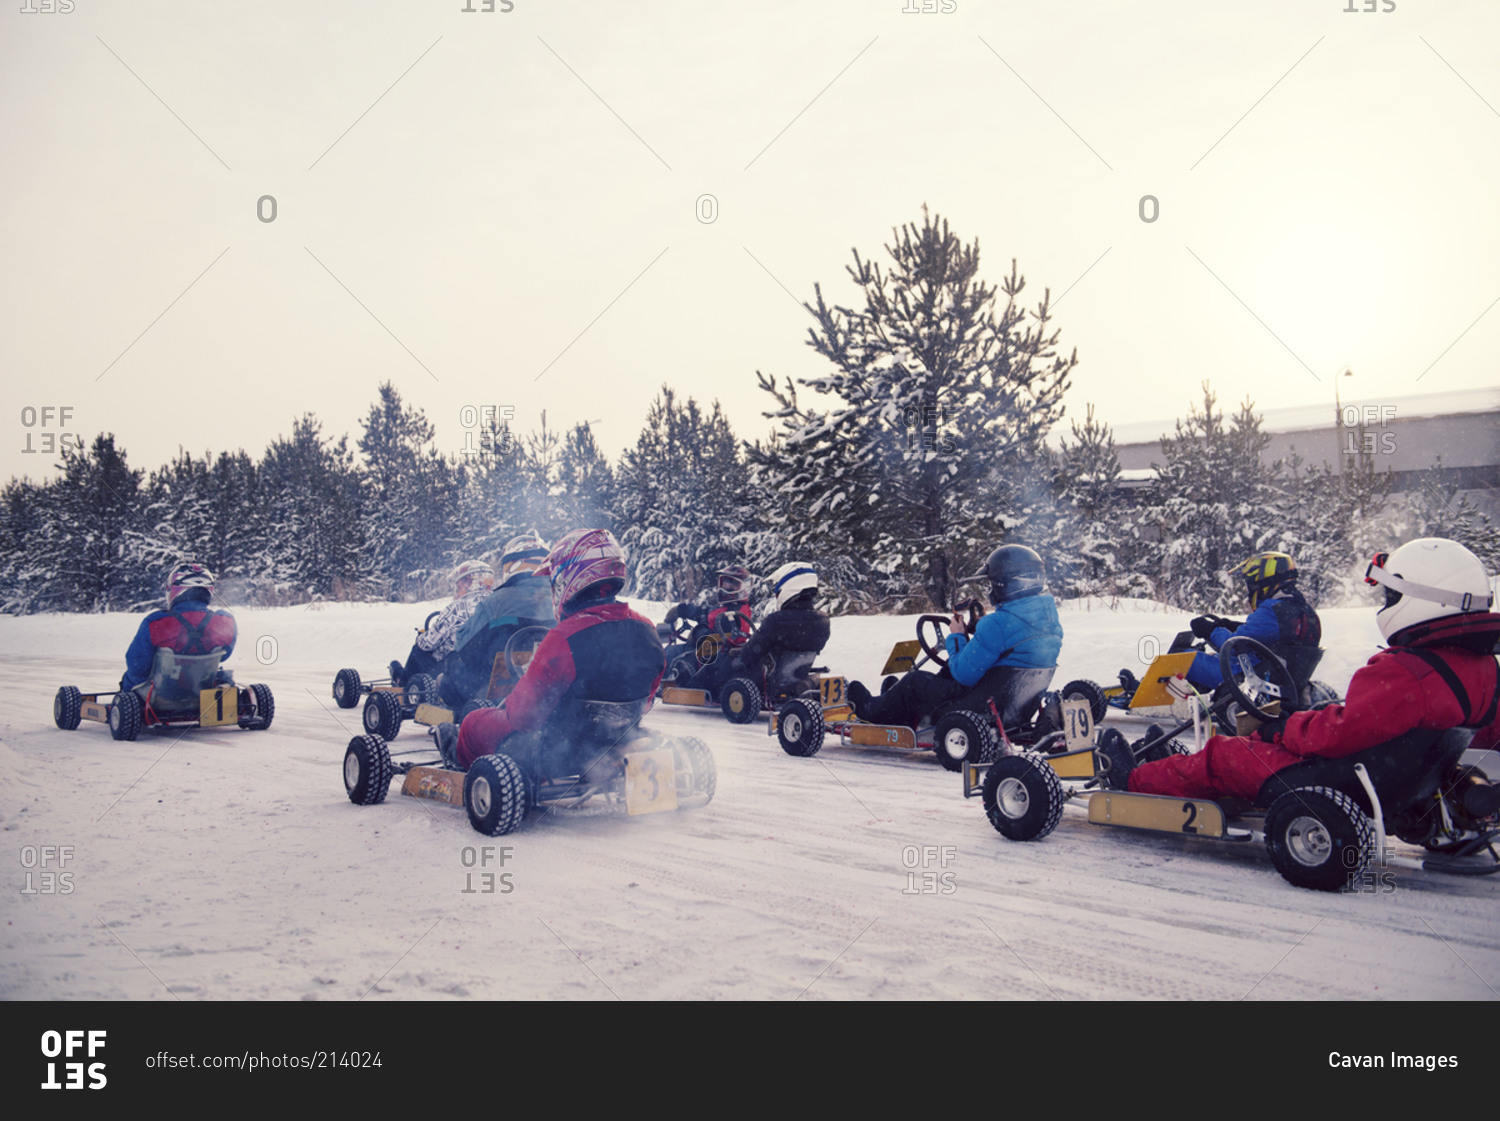 Go-kart race on a snowy track